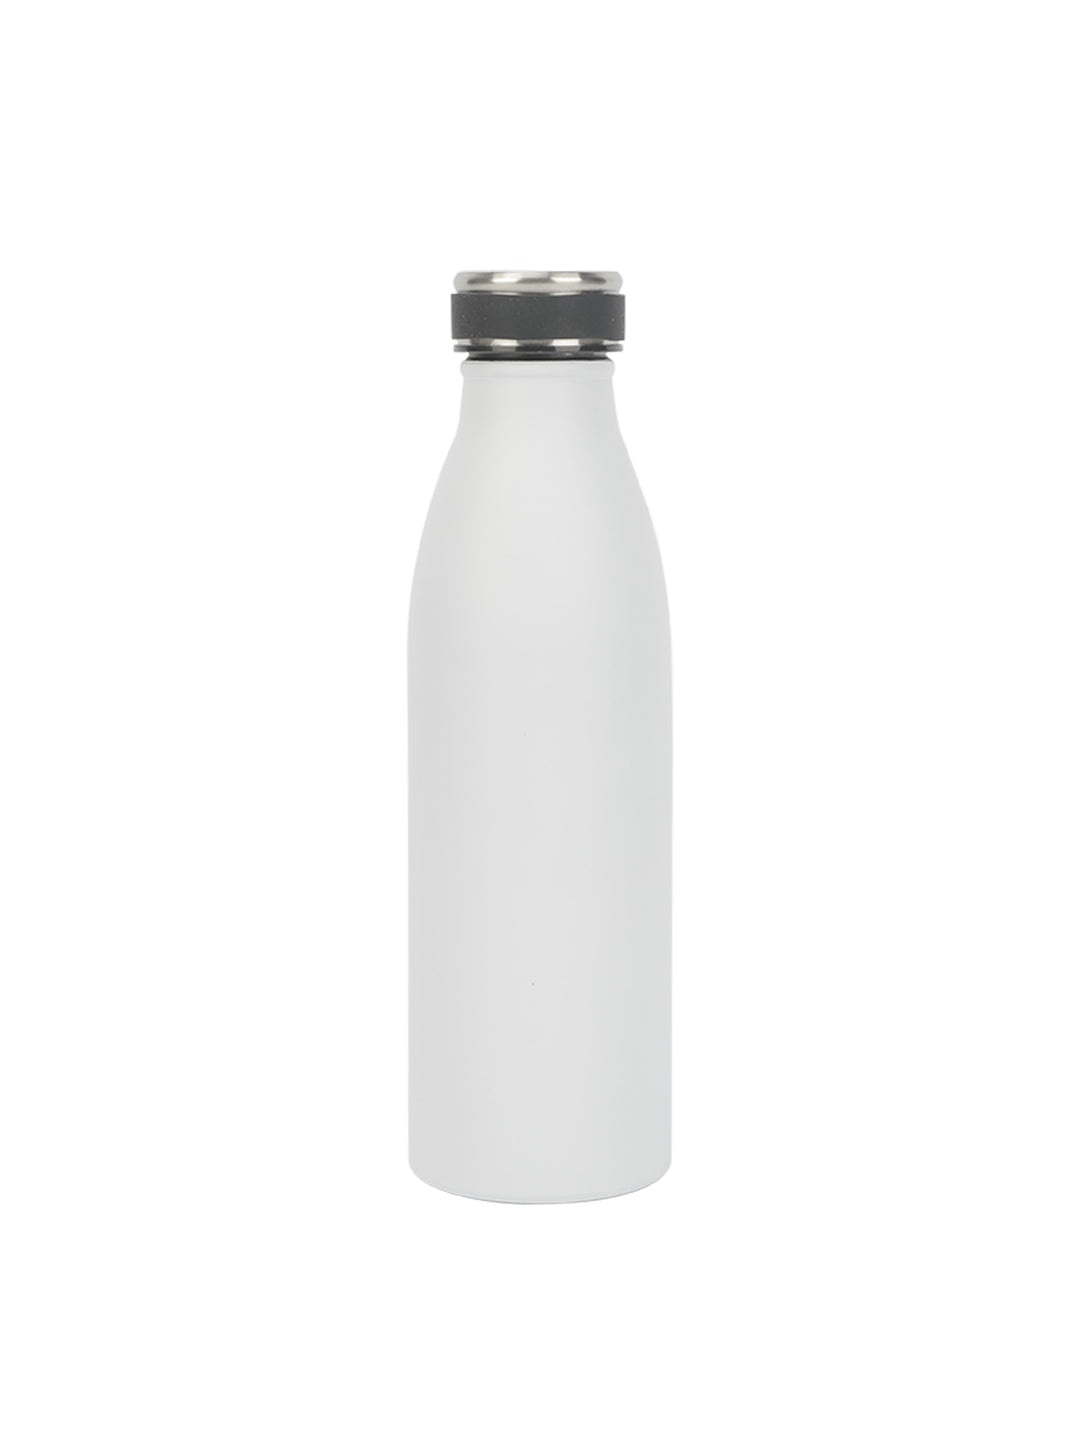 VON CASA 750Ml Top Stainless Steel Water Bottles - White